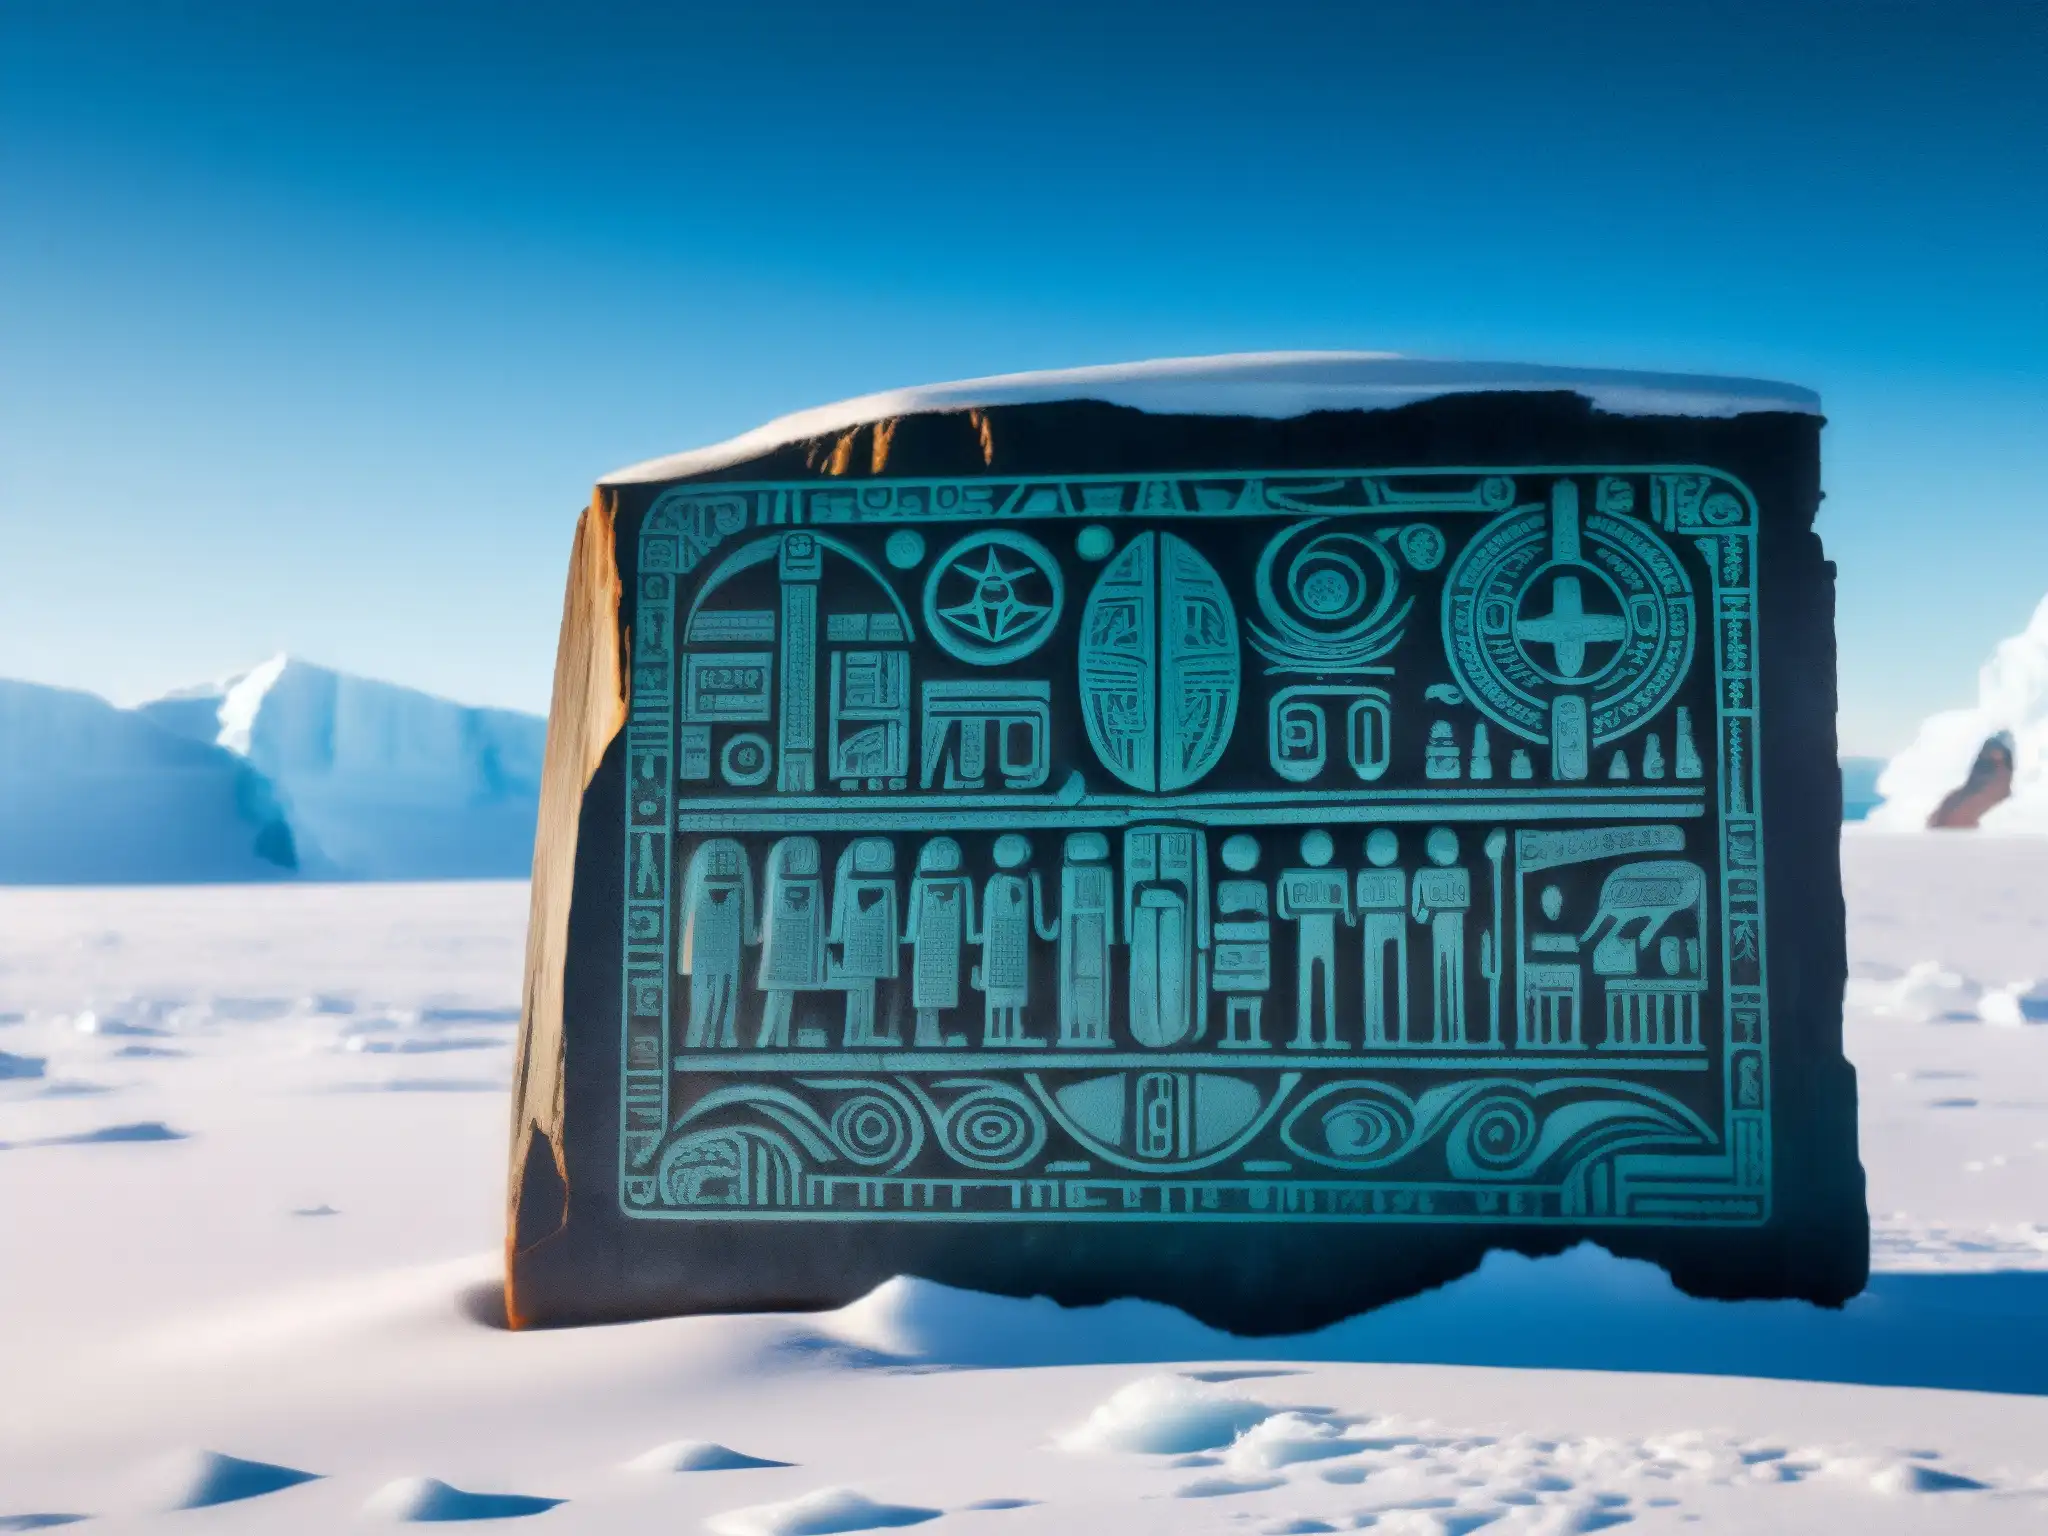 Tableta de piedra antigua con inscripciones misteriosas, en la desolada Antártida